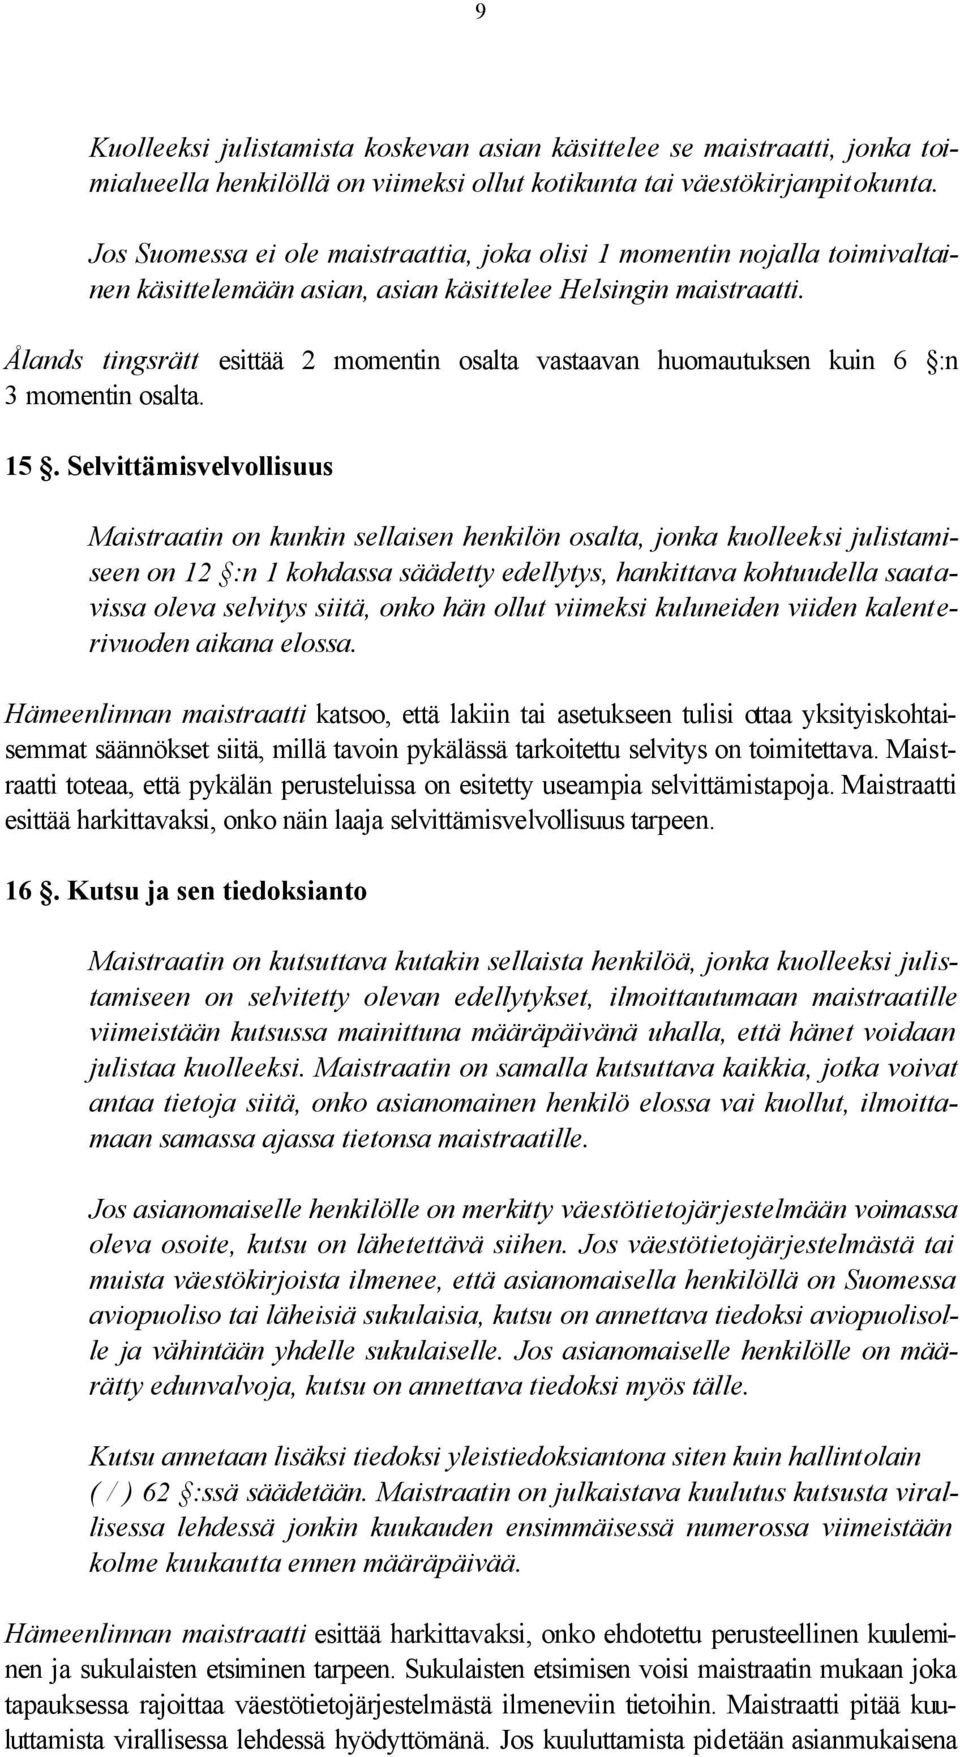 Ålands tingsrätt esittää 2 momentin osalta vastaavan huomautuksen kuin 6 :n 3 momentin osalta. 15.